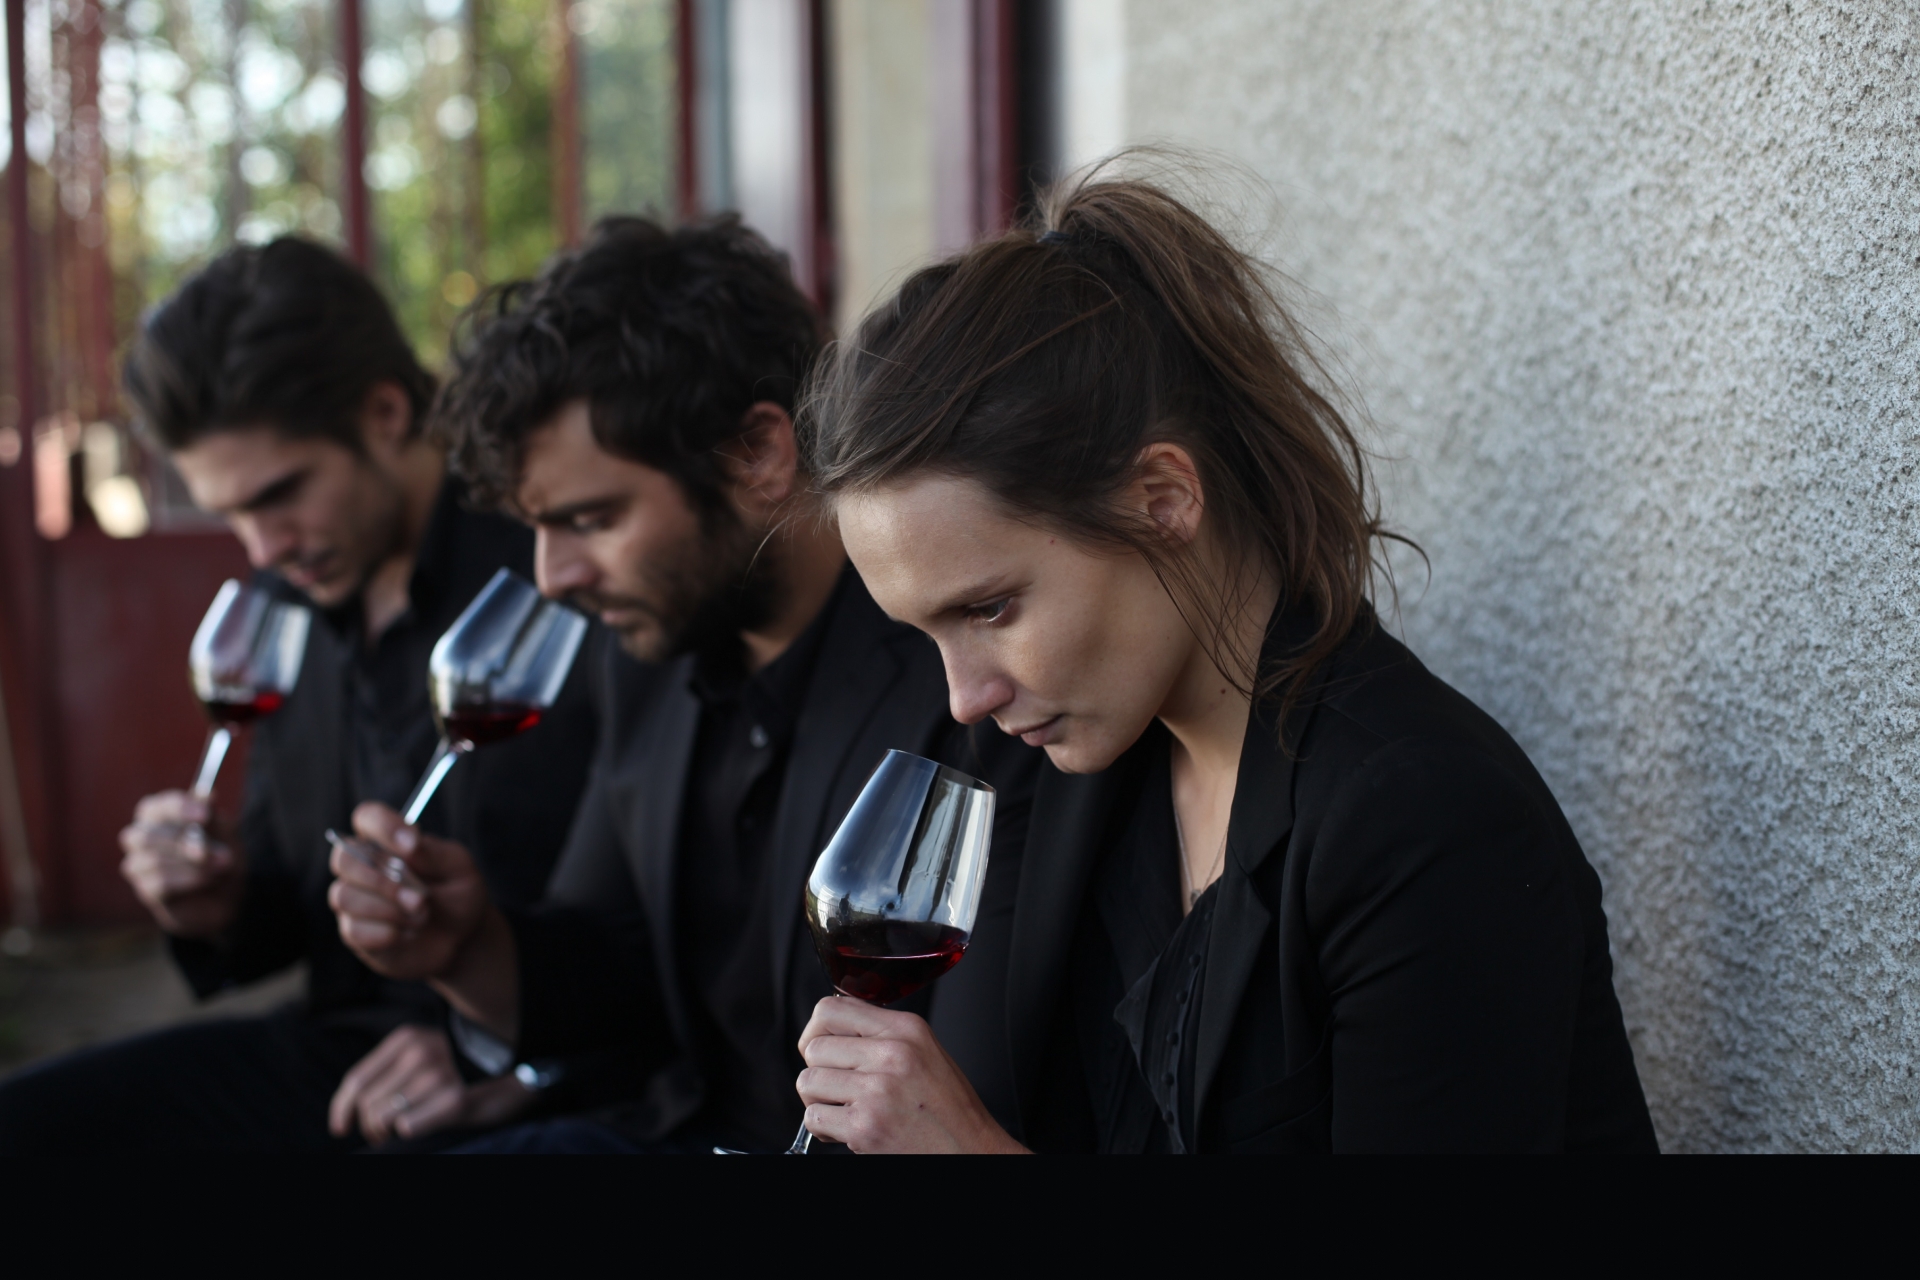 Le nouveau film de Cédric Klapisch, "Ce qui nous lie", a été tourné dans le vignoble bourguignon